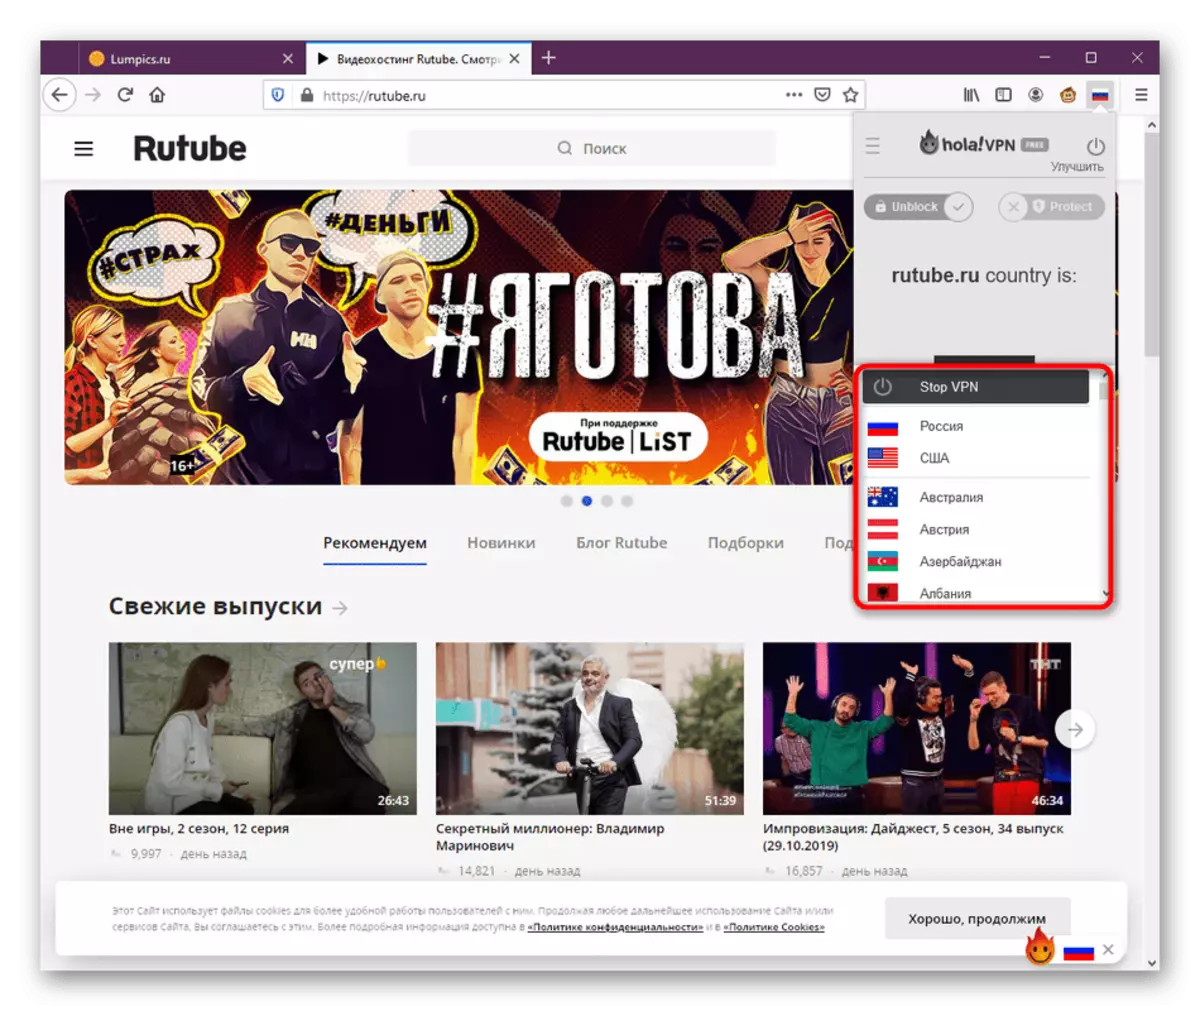 Deleng dhaptar negara sing kasedhiya kanggo nyambung liwat Hola ing Mozilla Firefox